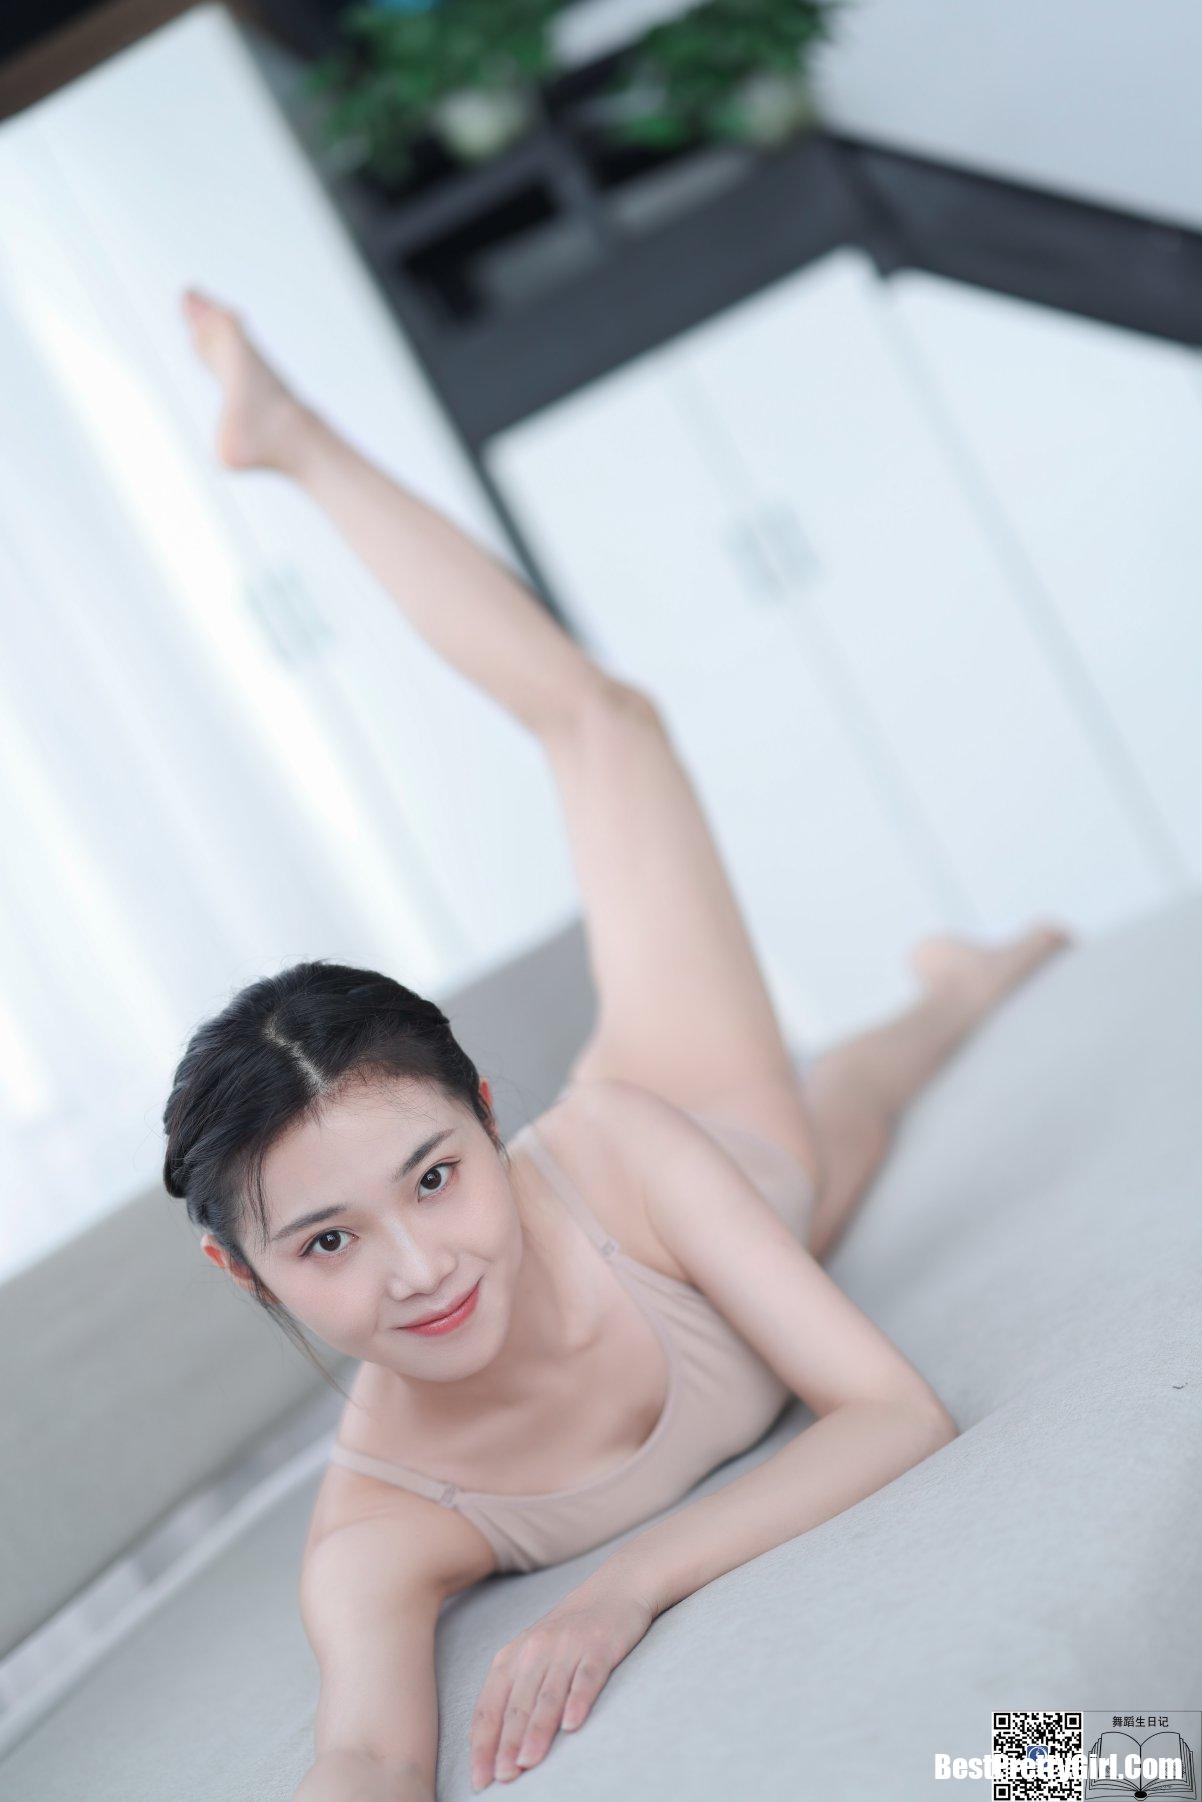 DanceDiary舞蹈生日记 2020.01.02 Qian Qian 46